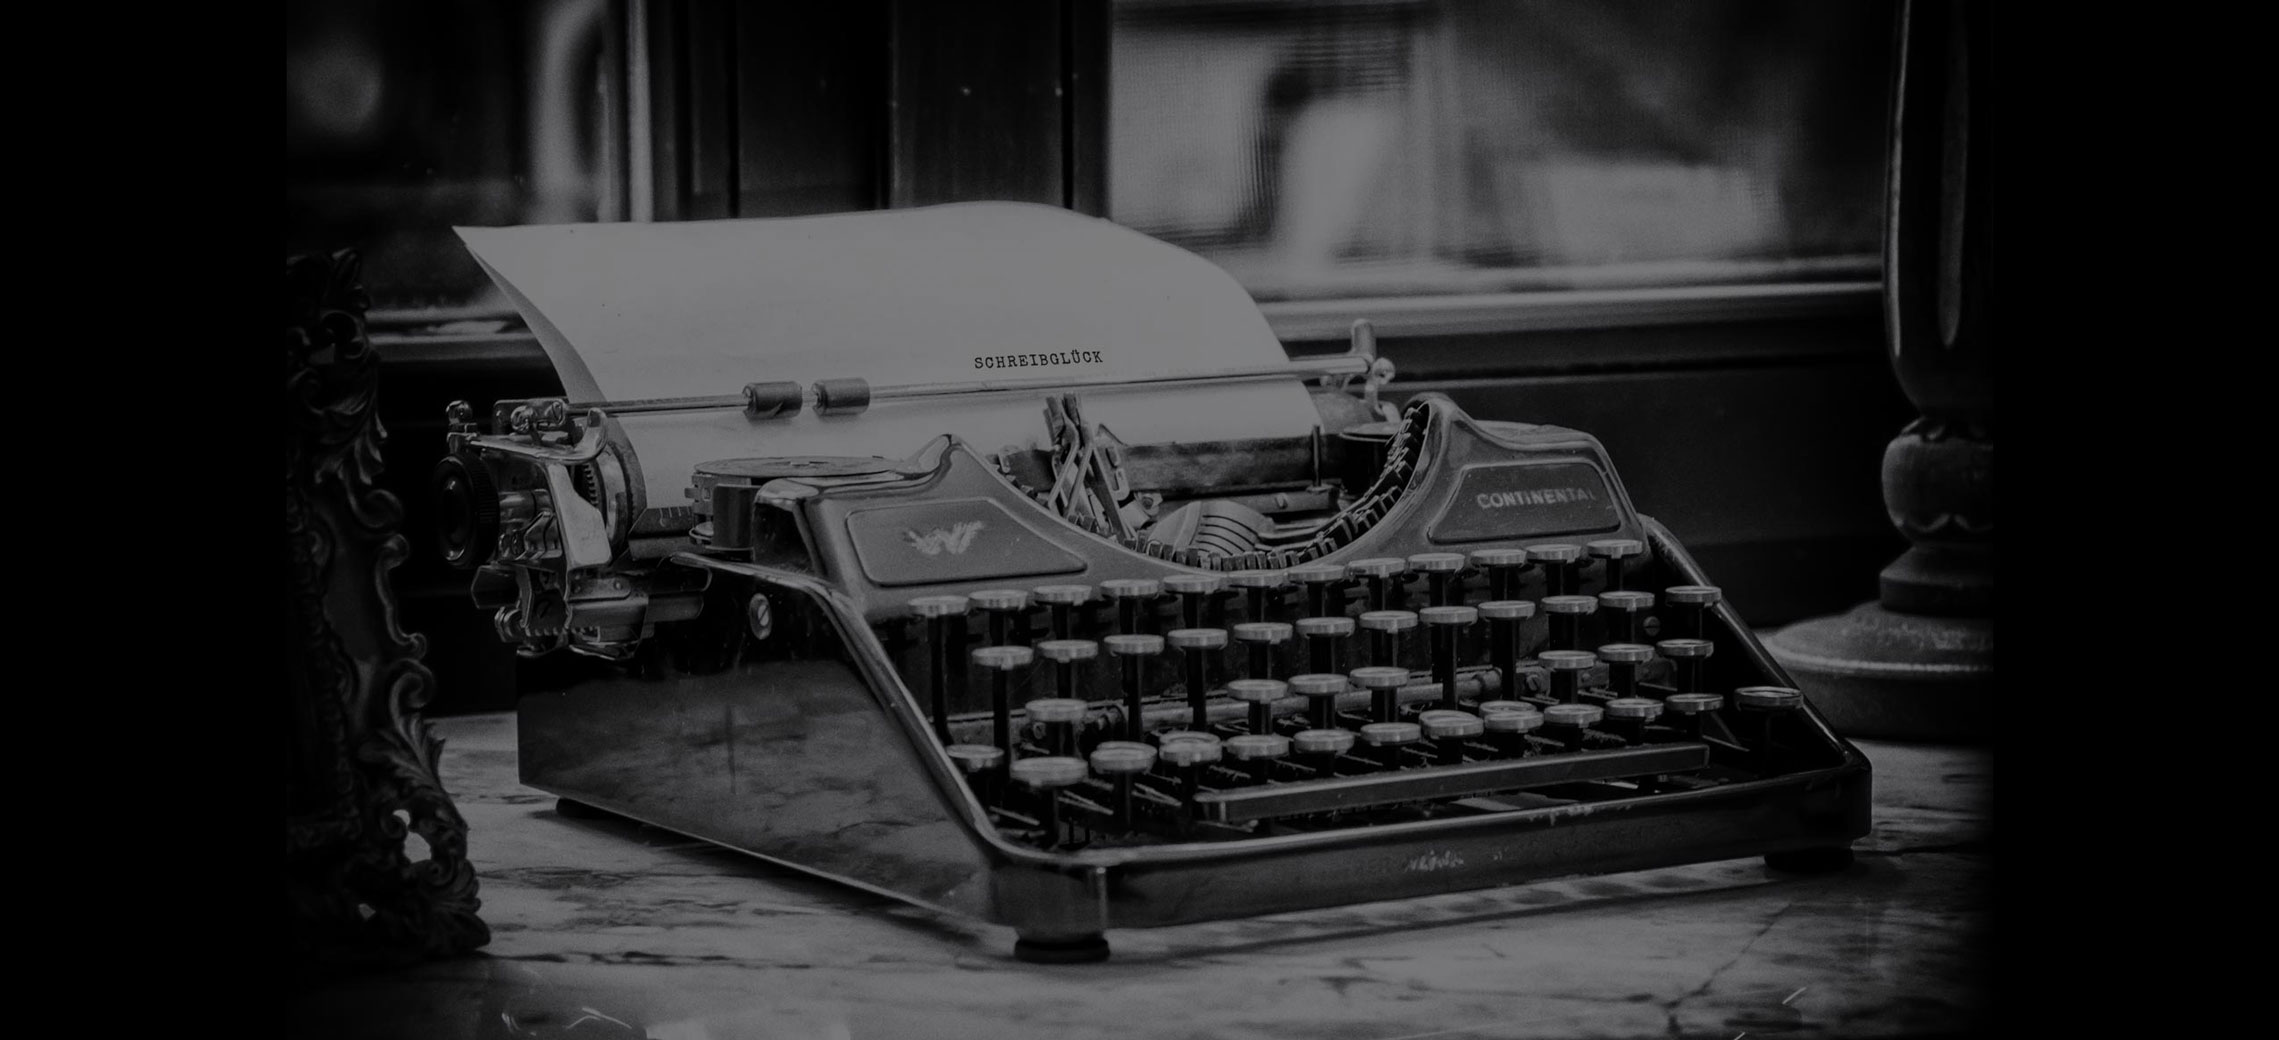 Alte Schreibmaschine in schwarz-weiß